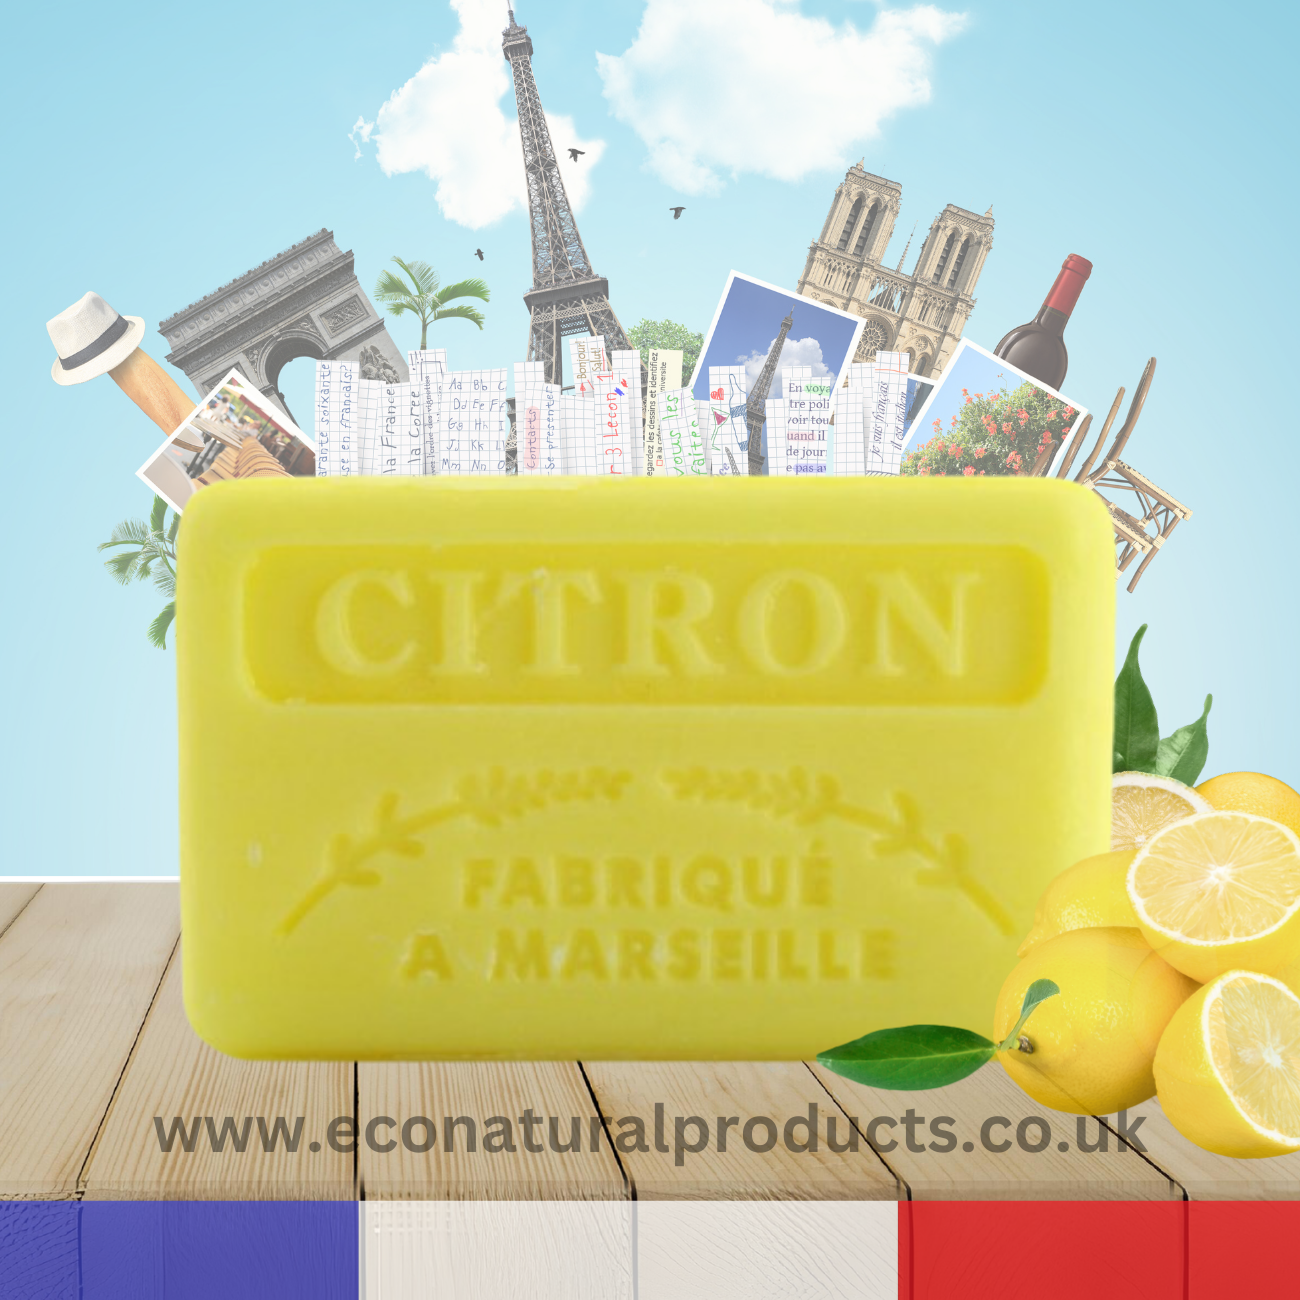 French Marseille Soap Citron (Lemon) 60g